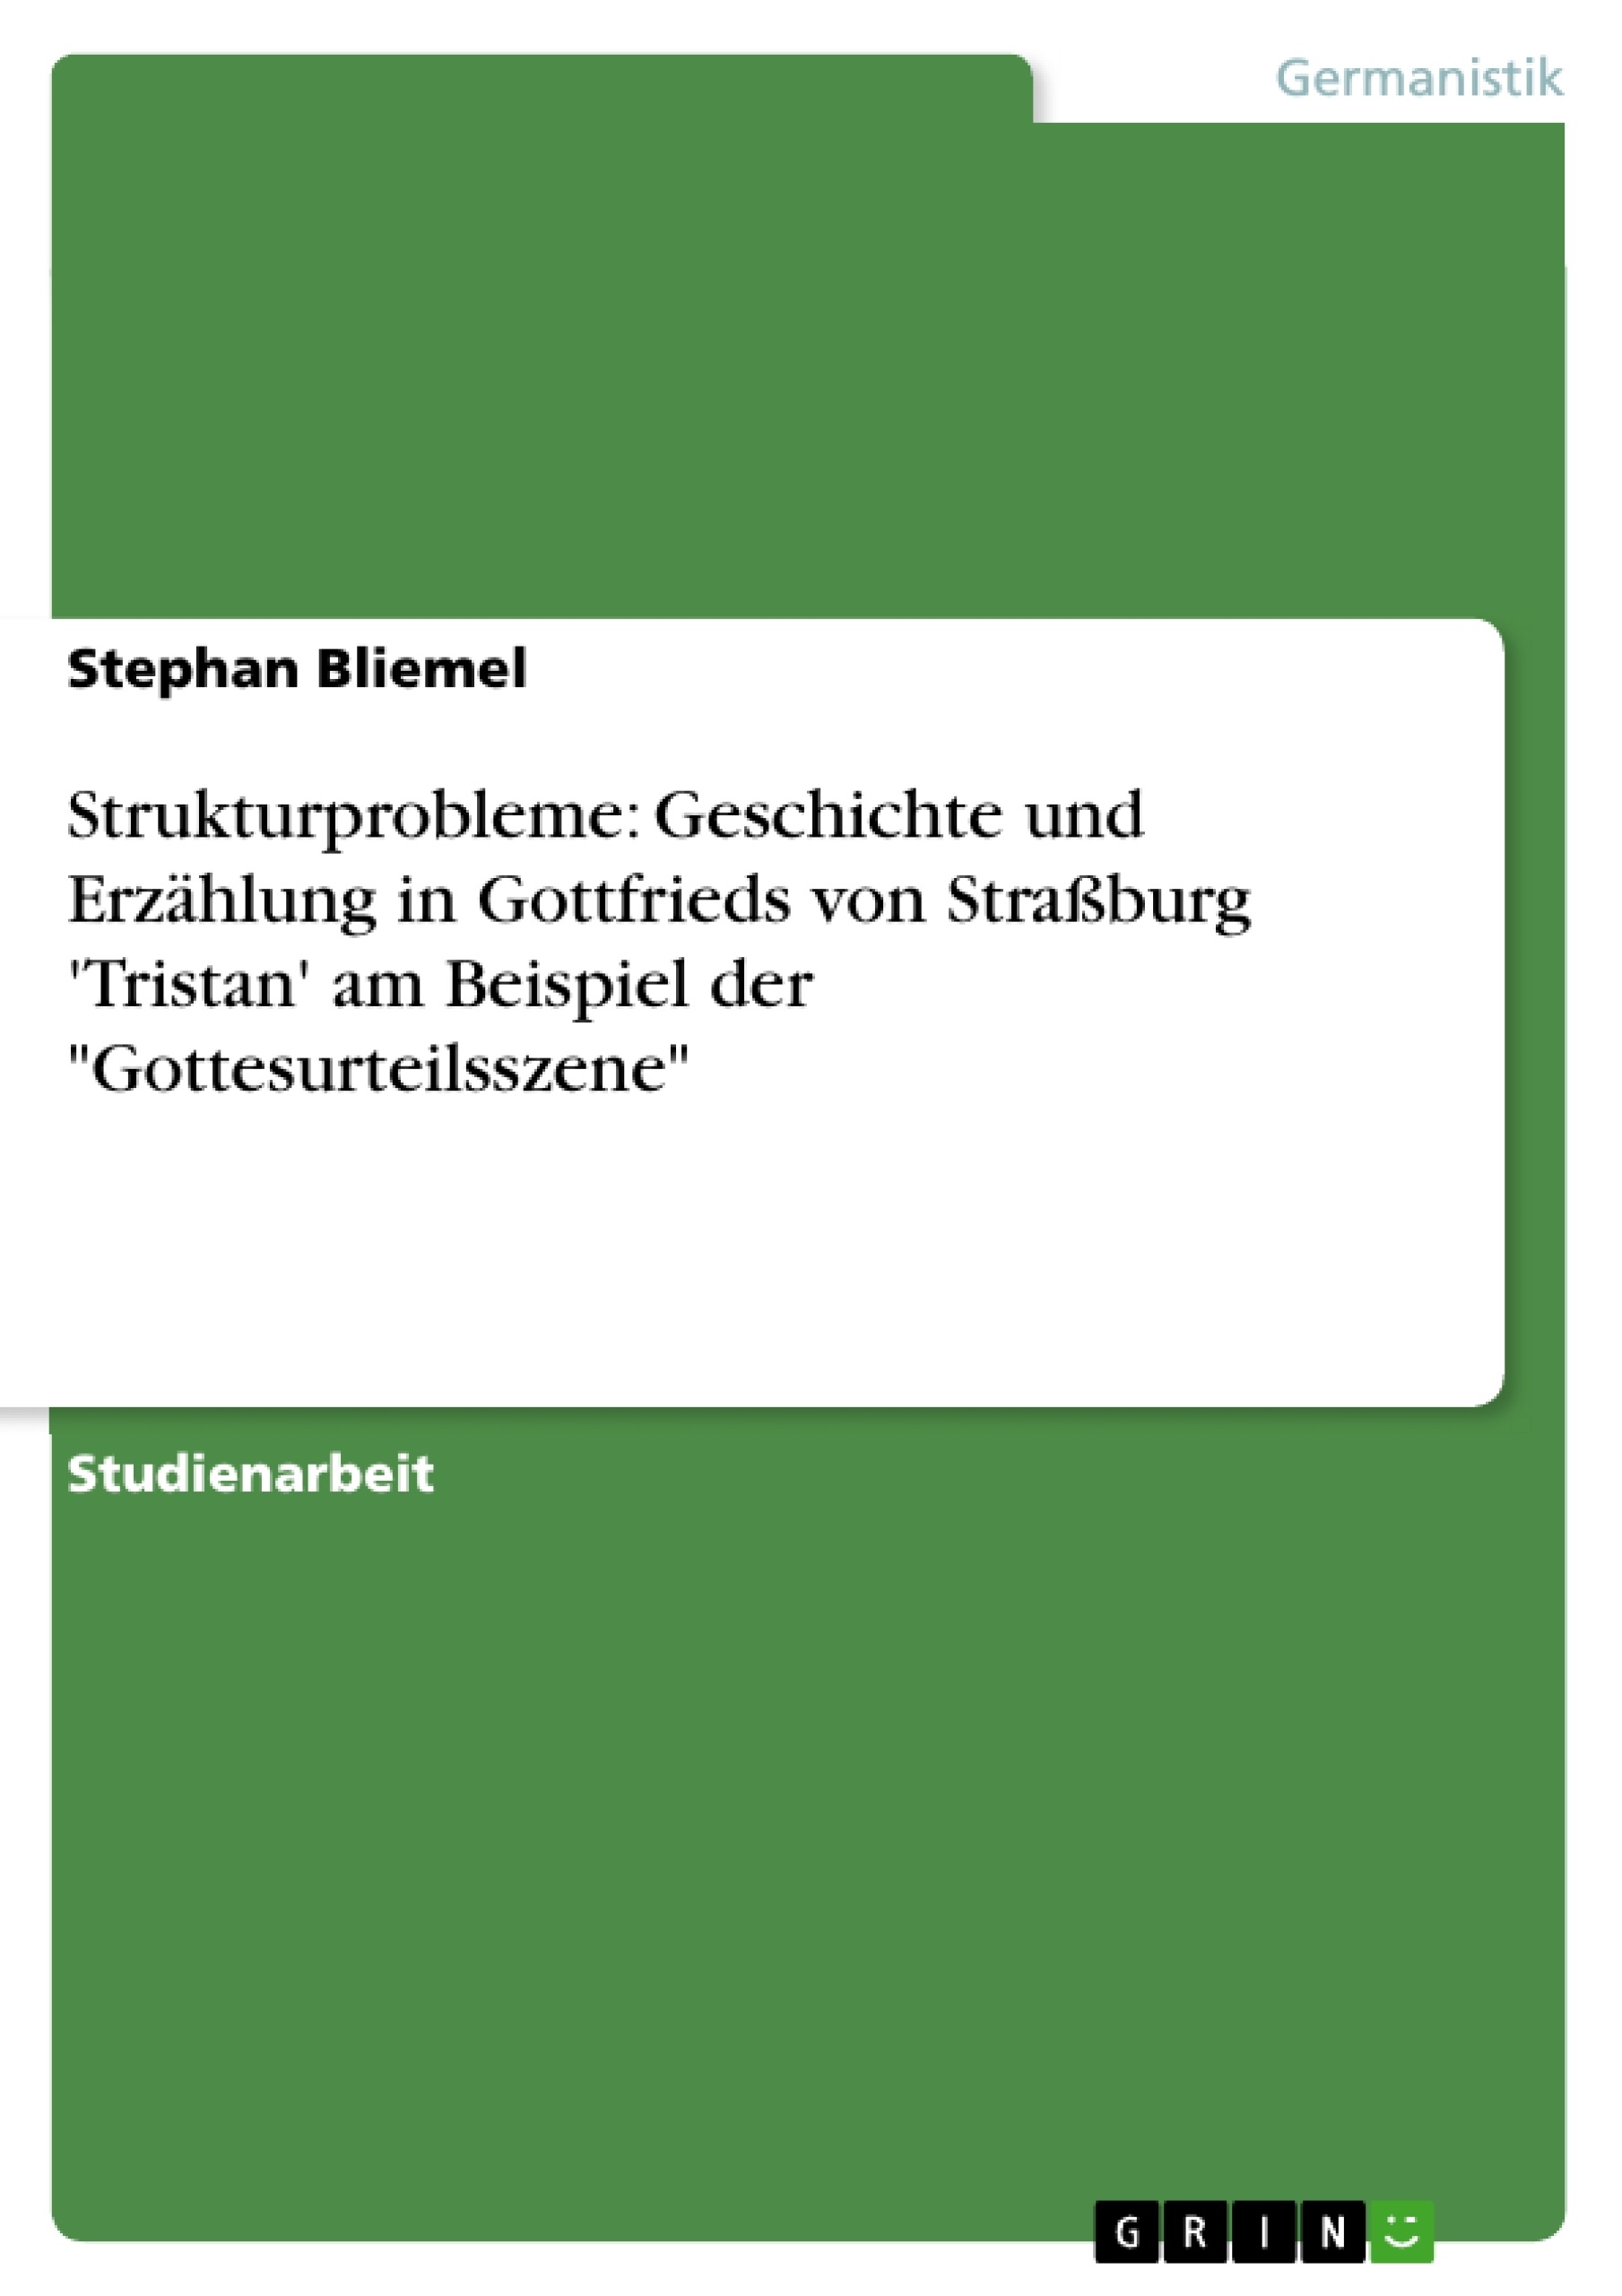 Titre: Strukturprobleme: Geschichte und Erzählung in Gottfrieds von Straßburg 'Tristan' am Beispiel der "Gottesurteilsszene"